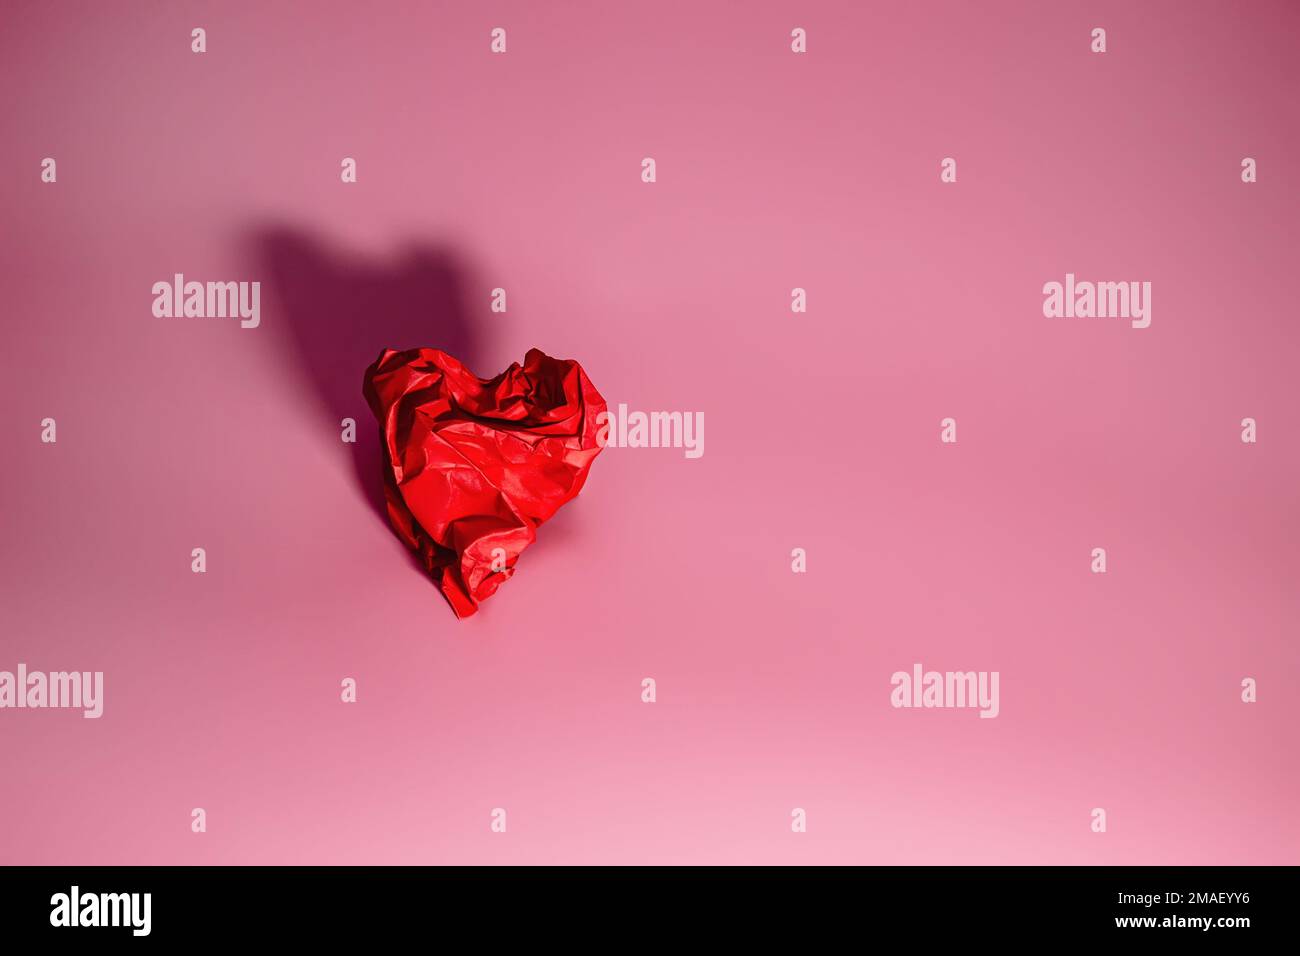 Cuore rosso di carta rumpled su uno sfondo rosa con ombra. Concetto di San Valentino. Un simbolo di separazione, tristezza Foto Stock